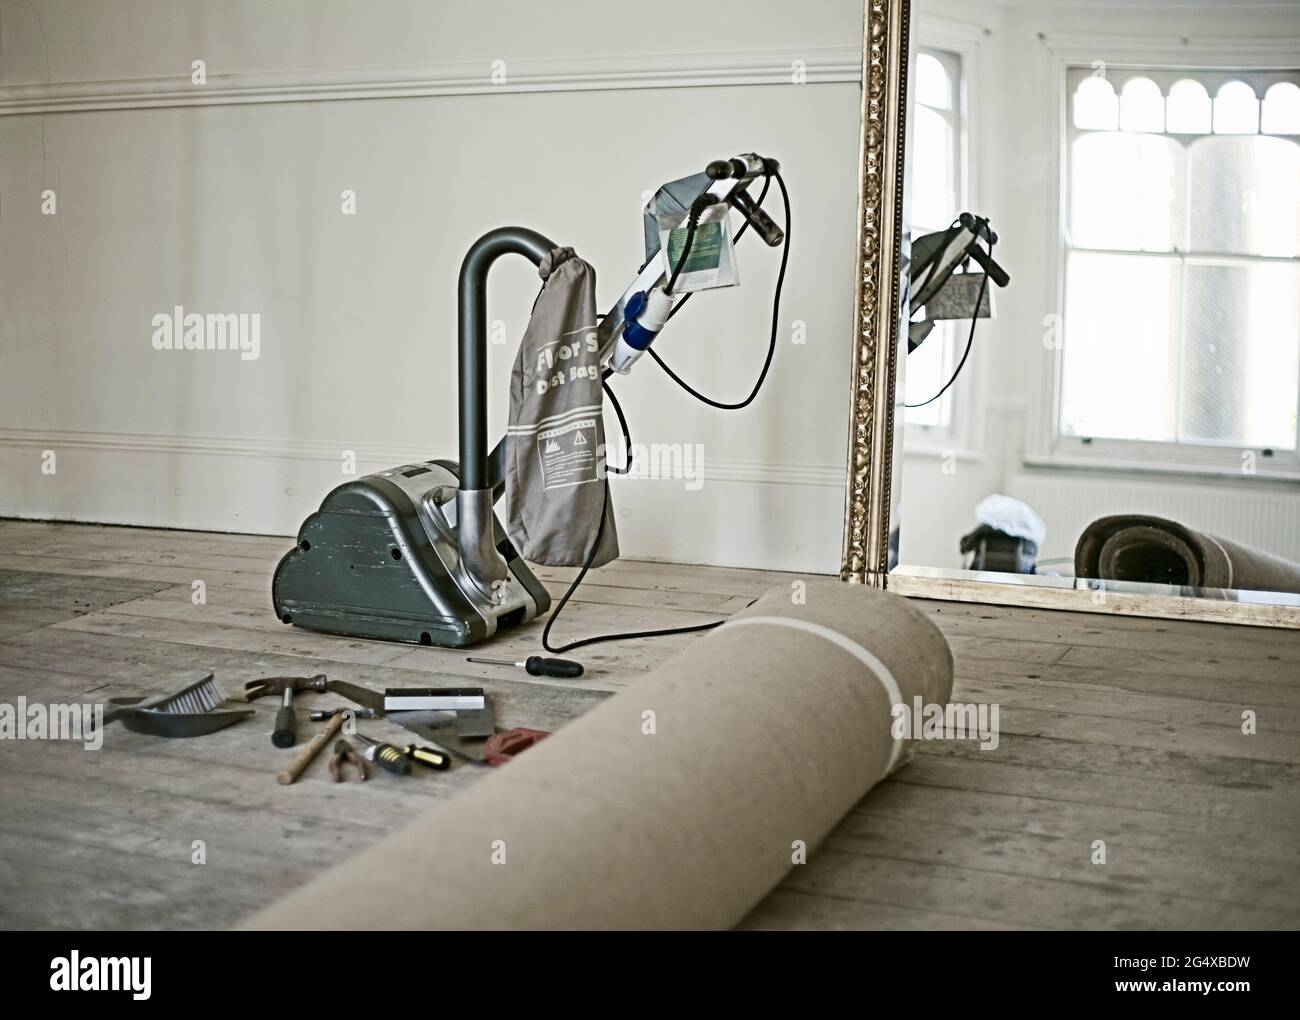 Moquette arrotolata, attrezzi da lavoro e levigatrice per pavimenti giacenti in un soggiorno vuoto Foto Stock